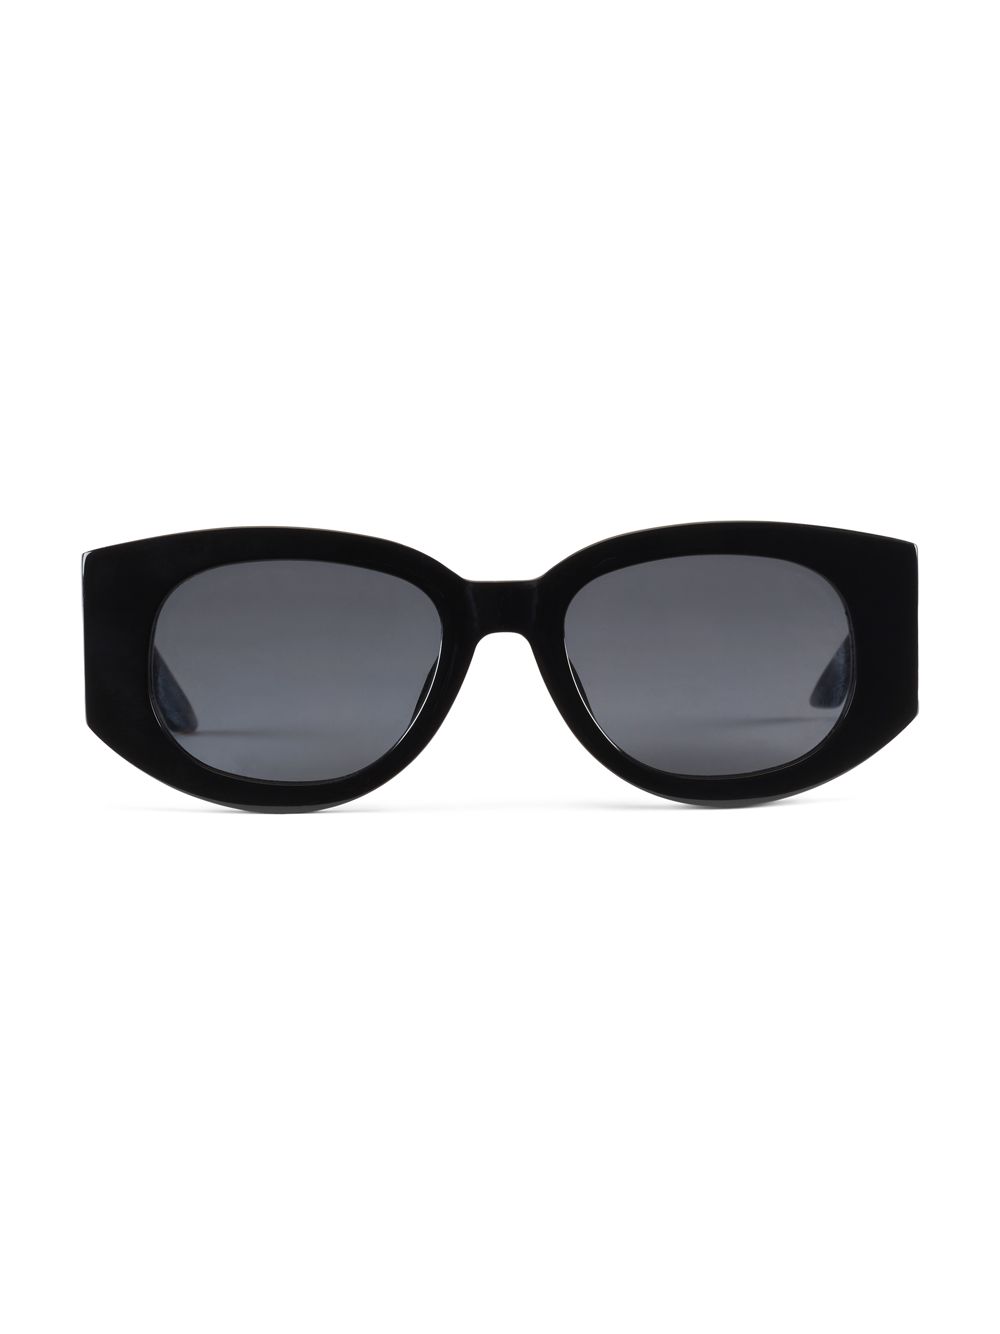 Солнцезащитные очки Masao Gabrielle 54MM Casablanca, черный солнцезащитные очки masao gabrielle 54mm casablanca черный